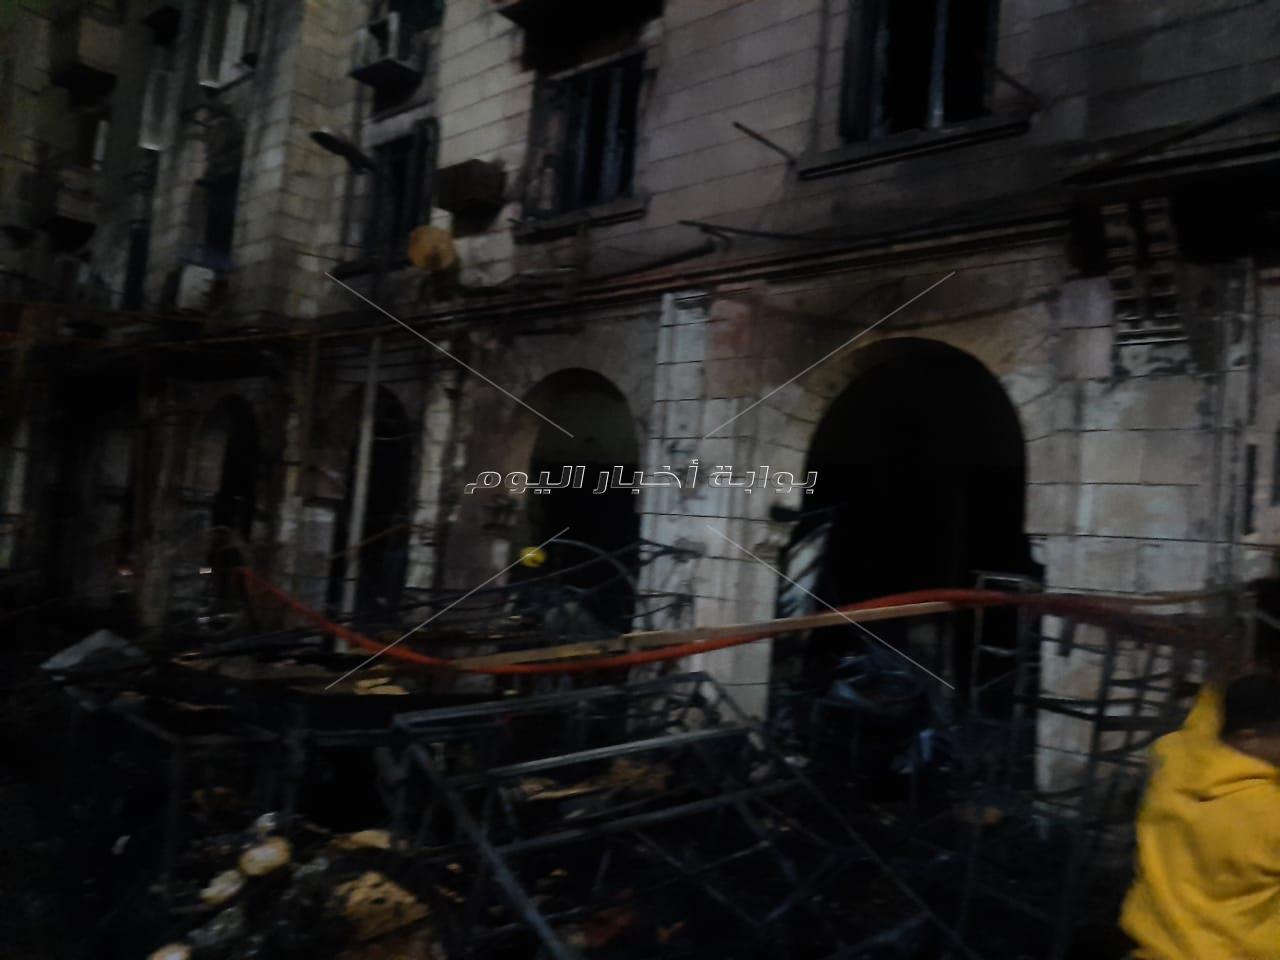 السيطرة على حريق بمبنى تابع للأوقاف بمحيط مسجد الحسين